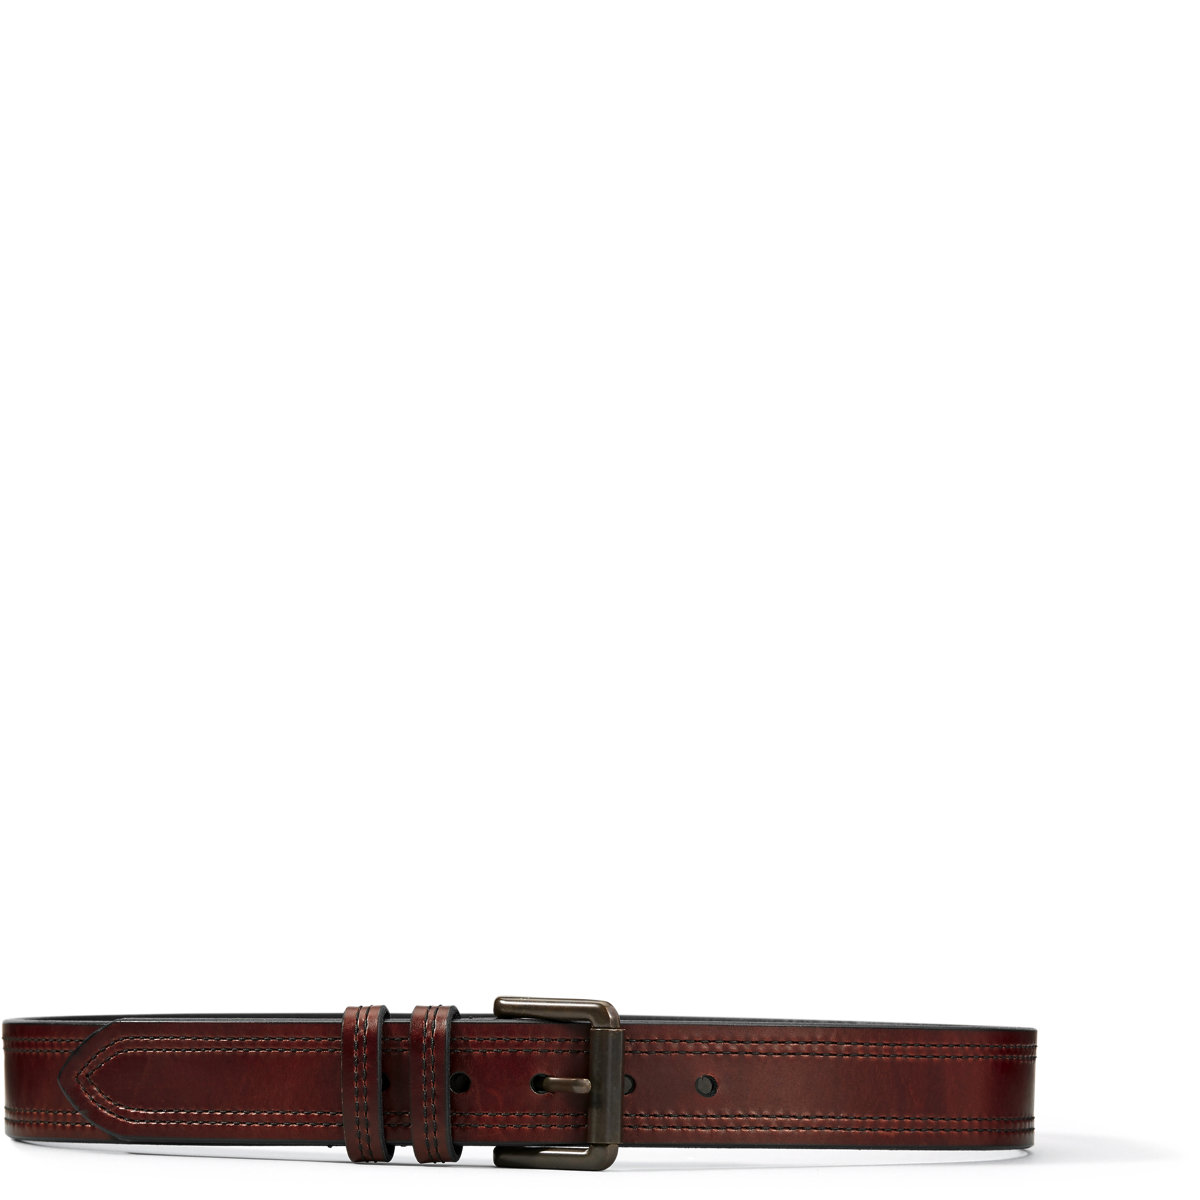 Danner Double Haul Belt - Brown w/ Antique